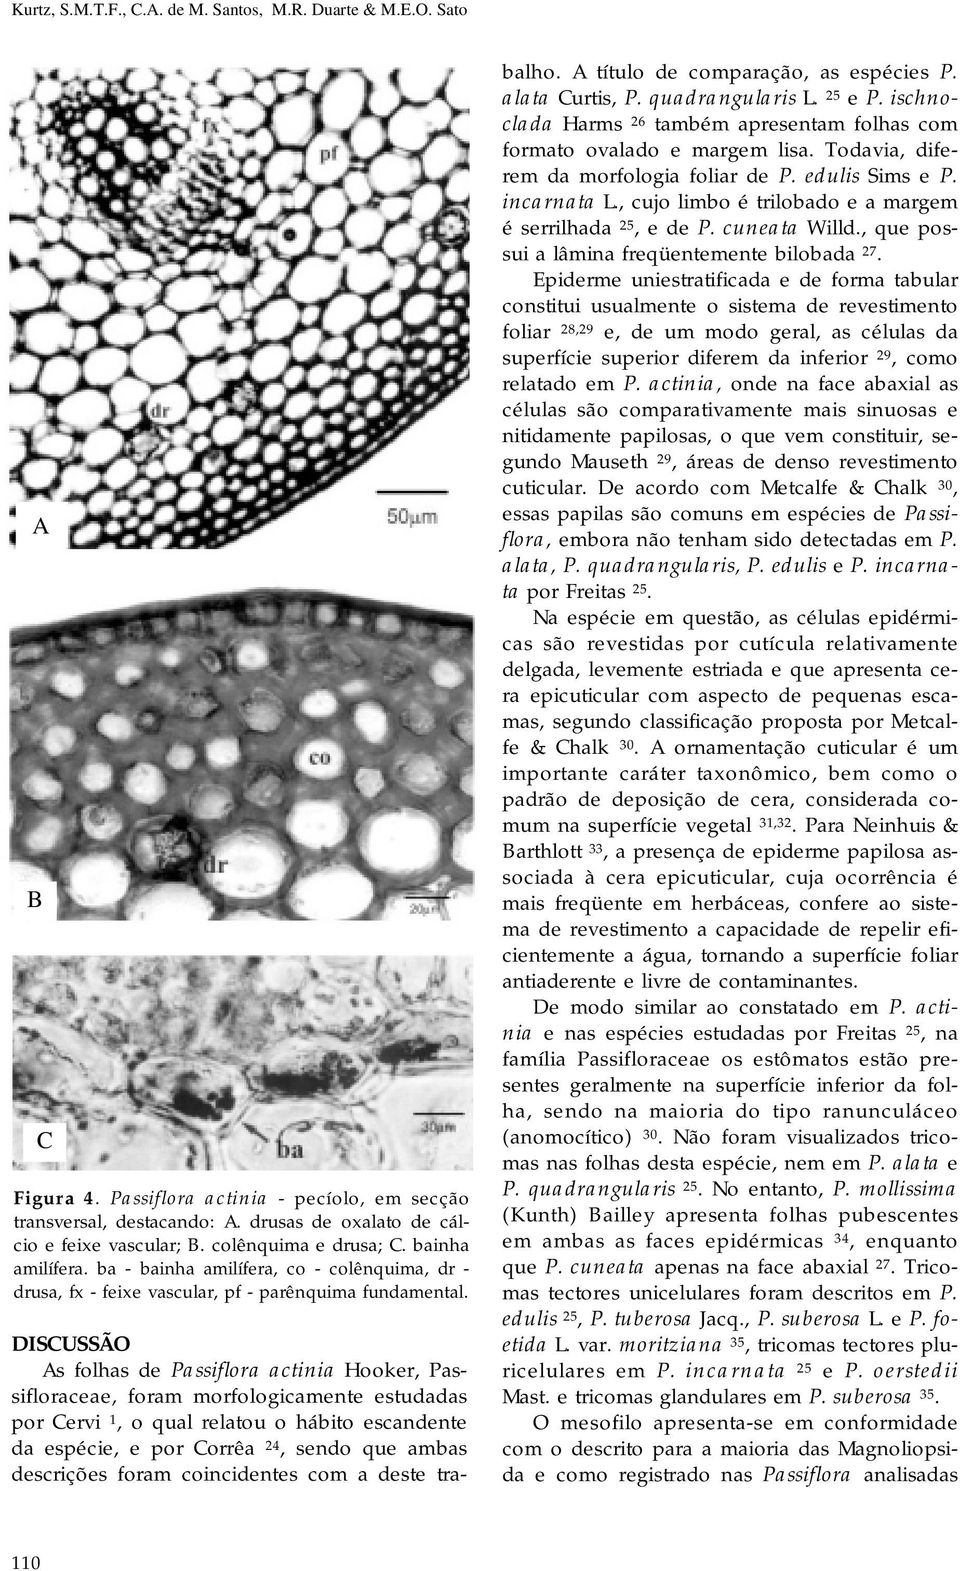 DISCUSSÃO As folhas de Passiflora actinia Hooker, Passifloraceae, foram morfologicamente estudadas por Cervi 1, o qual relatou o hábito escandente da espécie, e por Corrêa 24, sendo que ambas